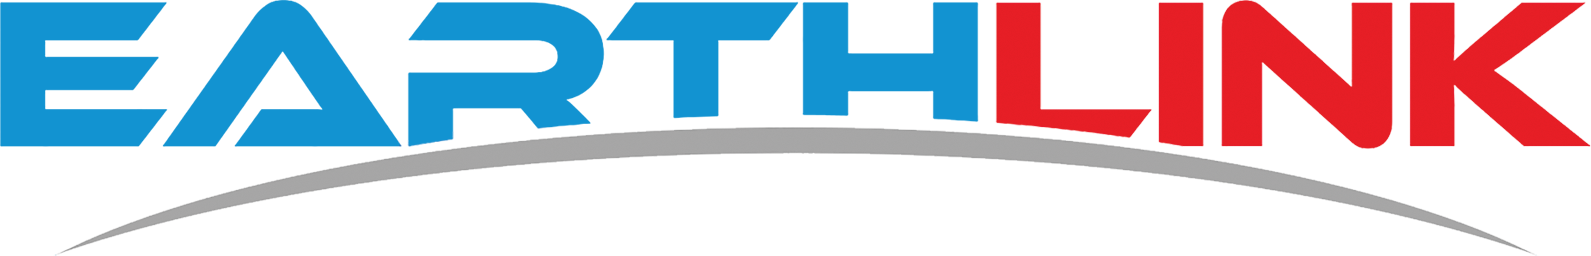 EL logo